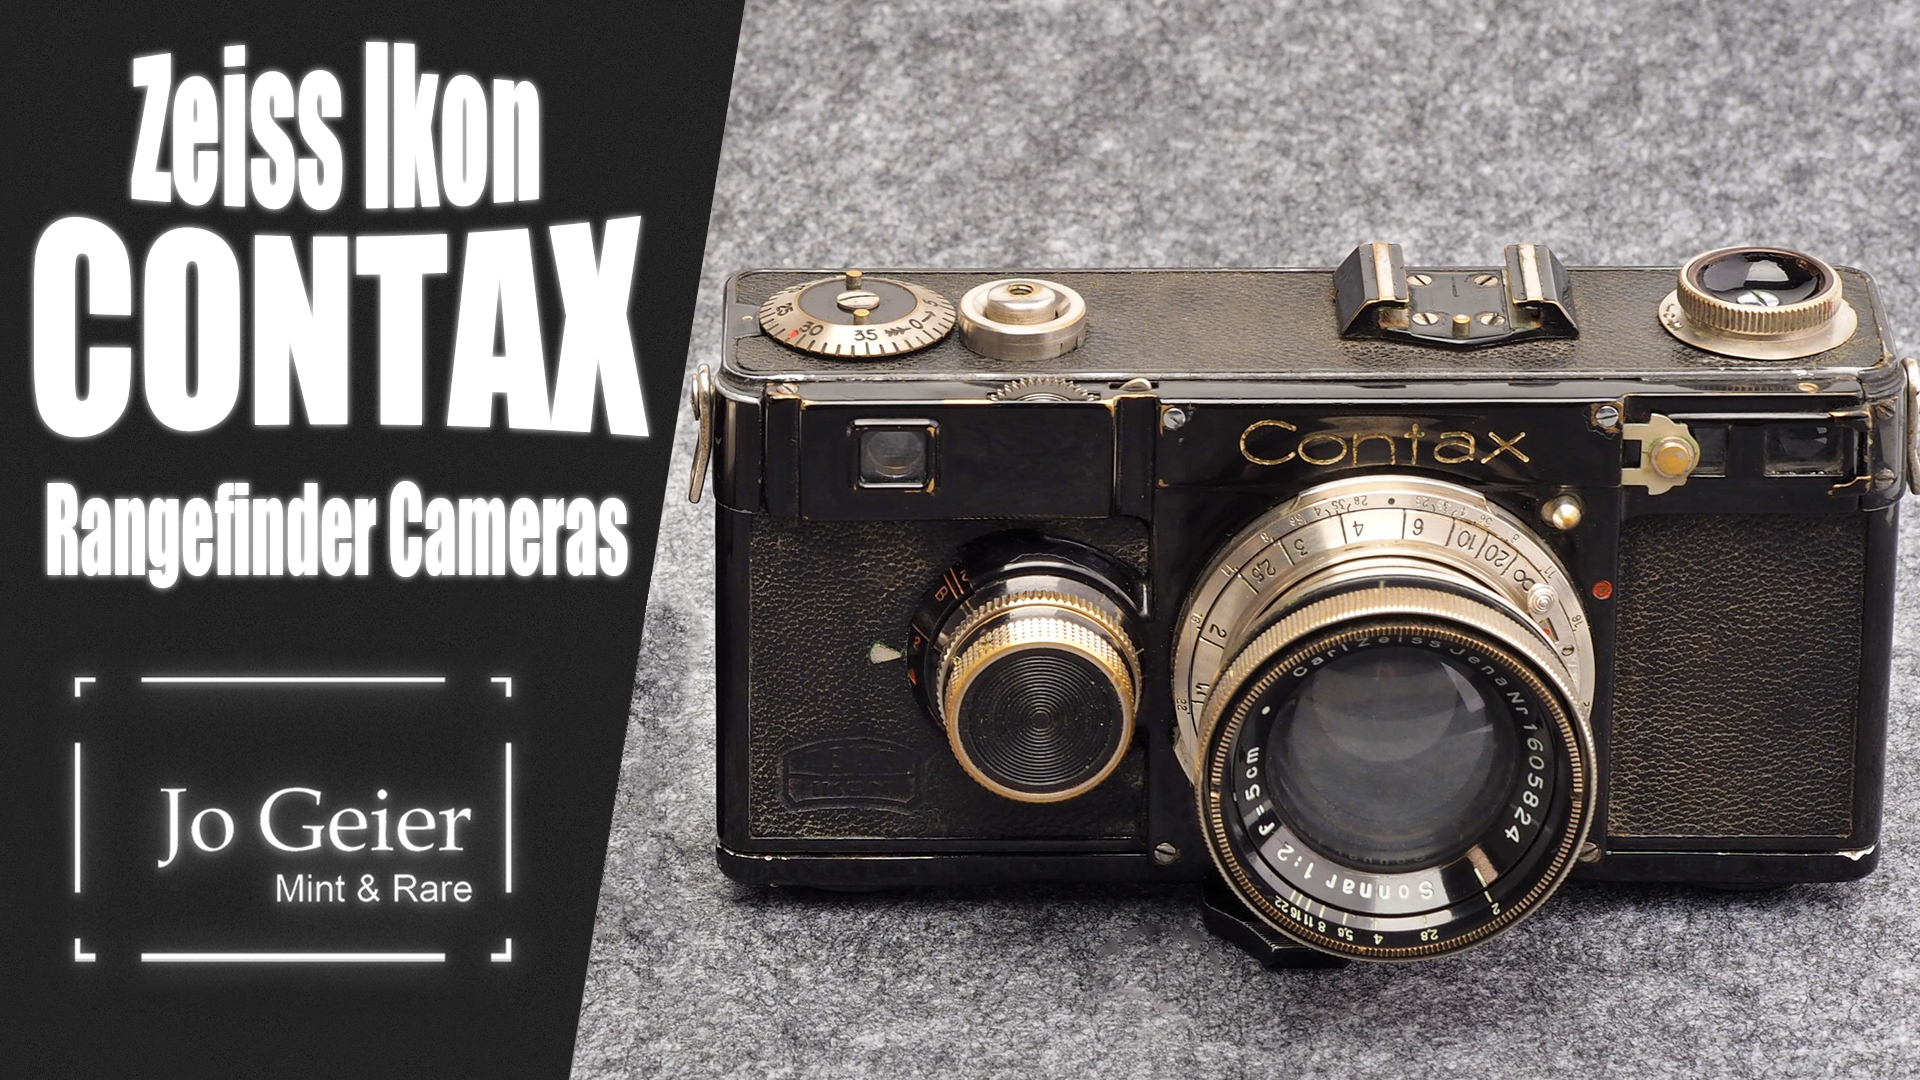 Zeiss Ikon Contax Rangefinder Cameras - A Quick Overview - Video - Jo Geier - Mint & Rare